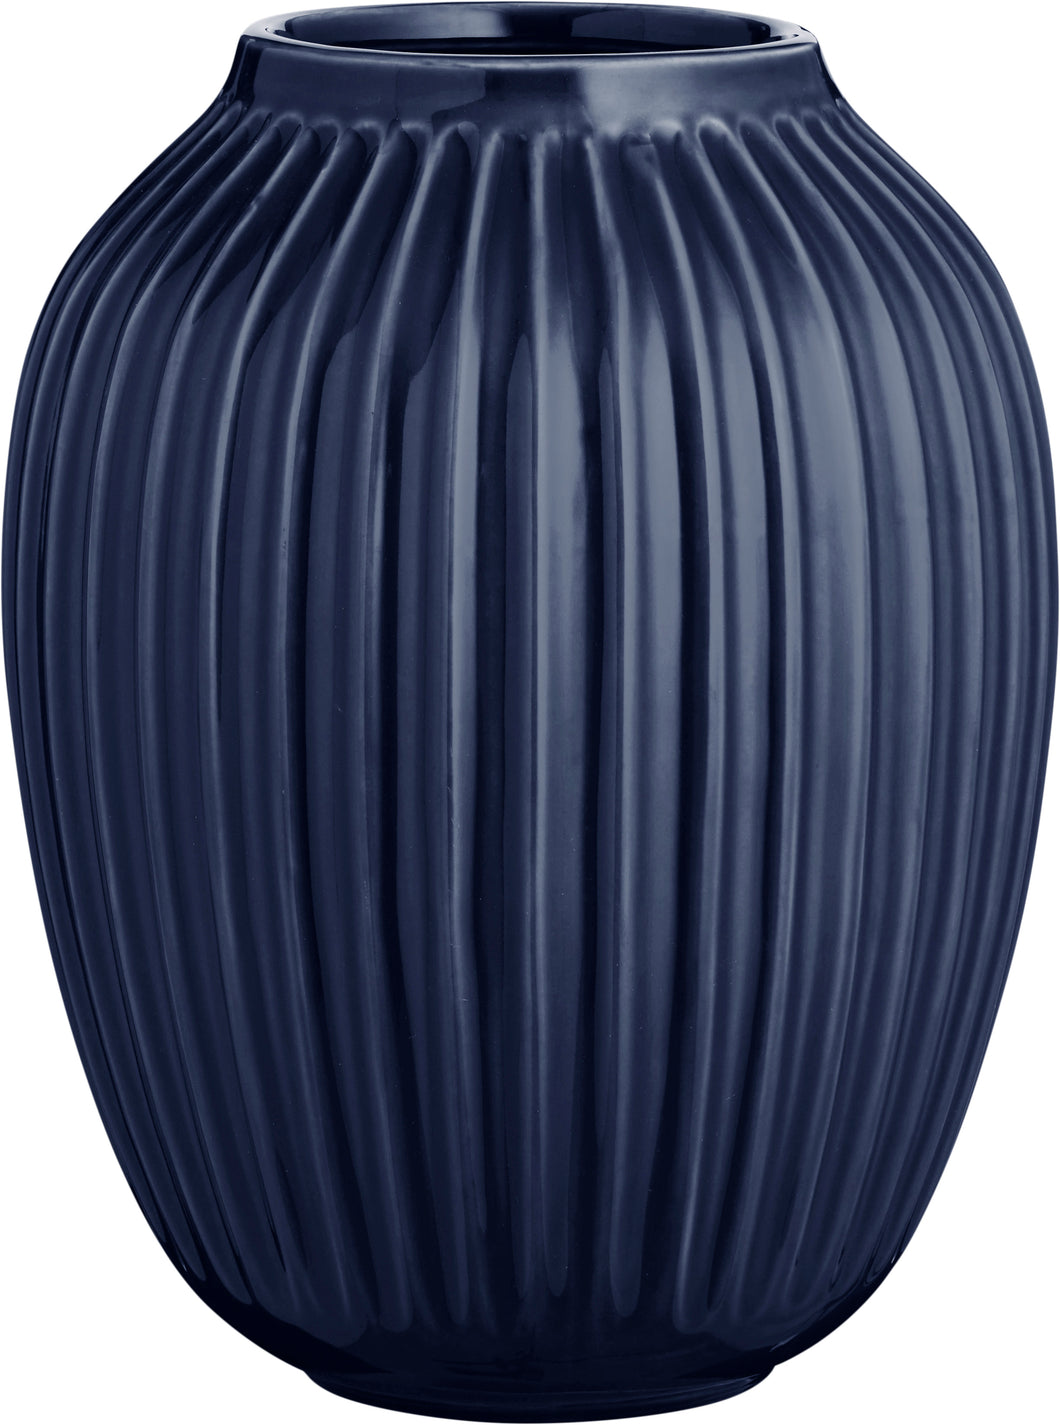 Hammershøi vase H25 Indigo Blå H:25 cm